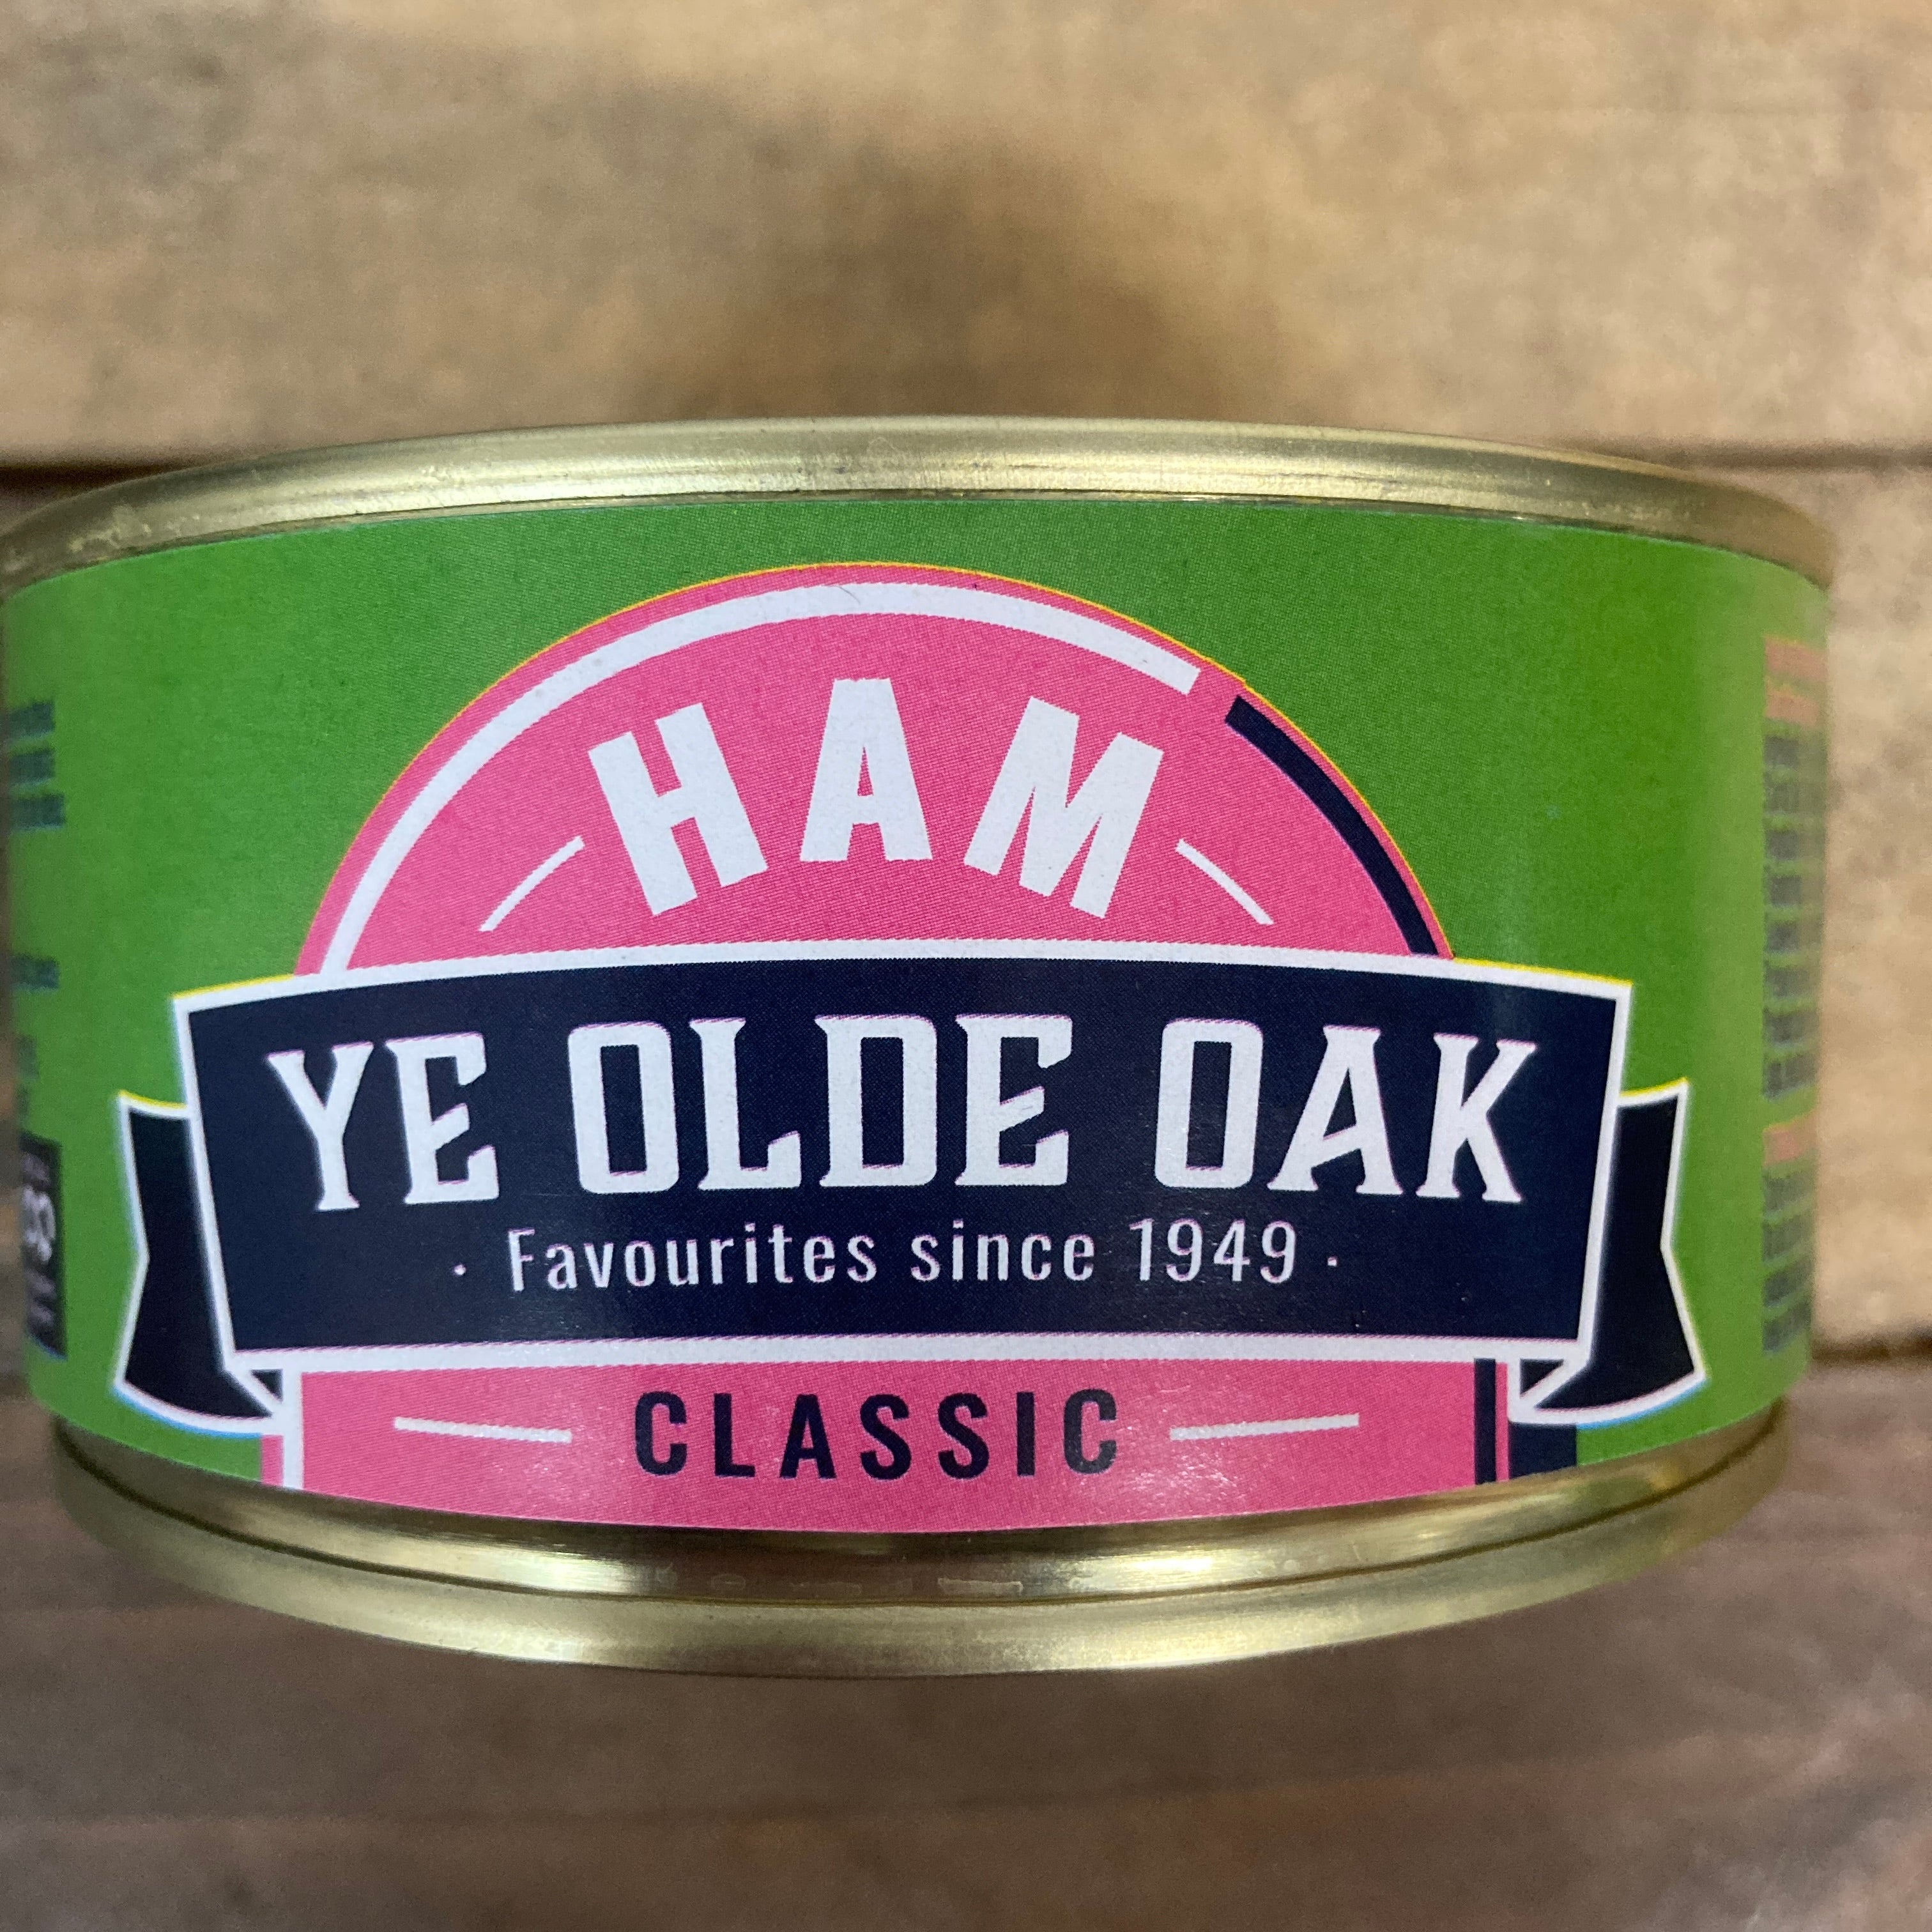 The Classic - Ye Olde Oak